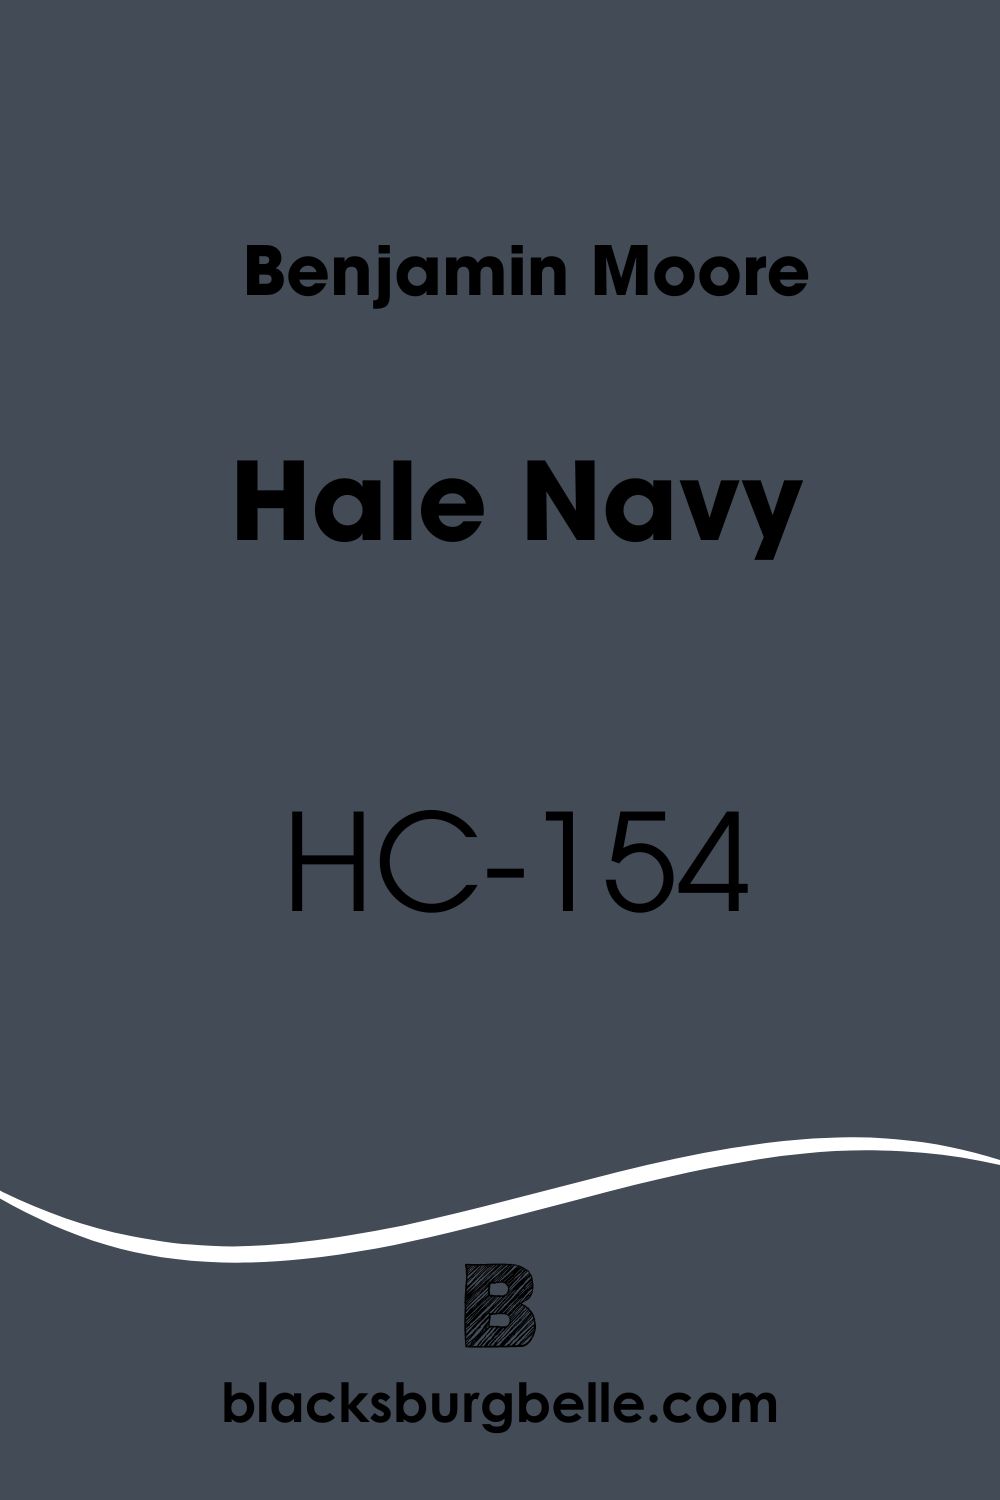 Benjamin Moore Hale Navy HC-154